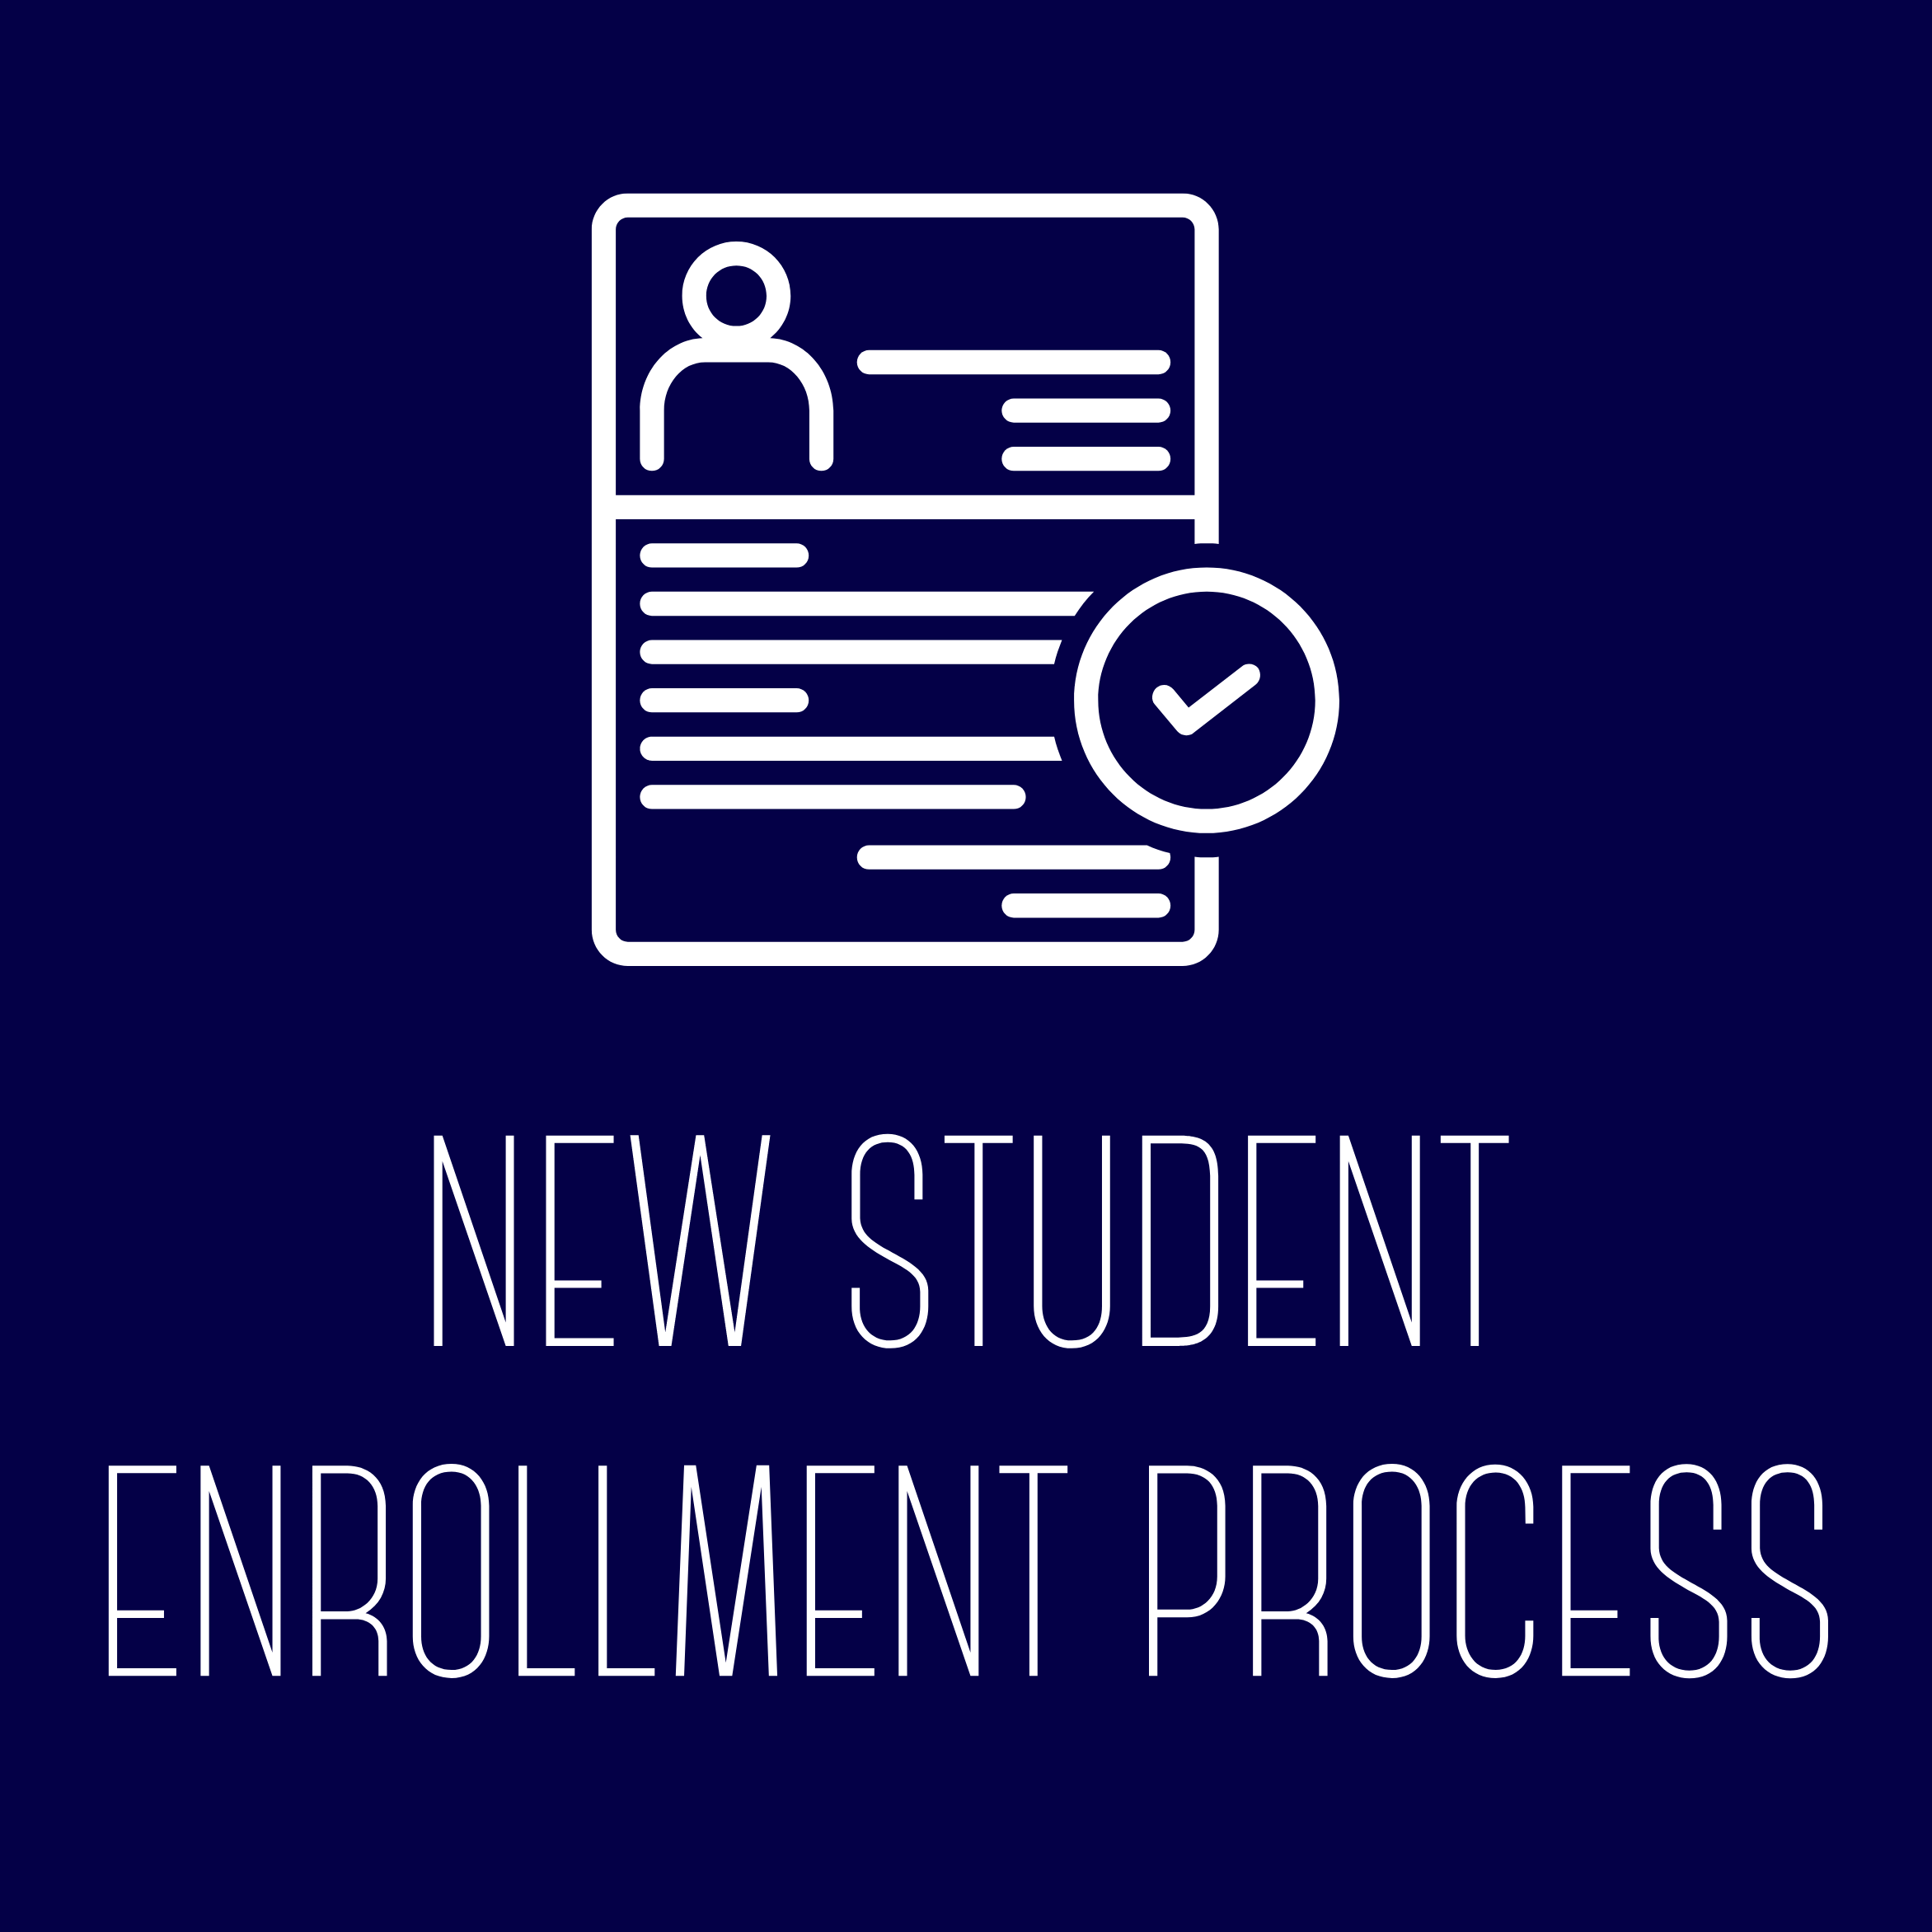 New Student Enrollment Process